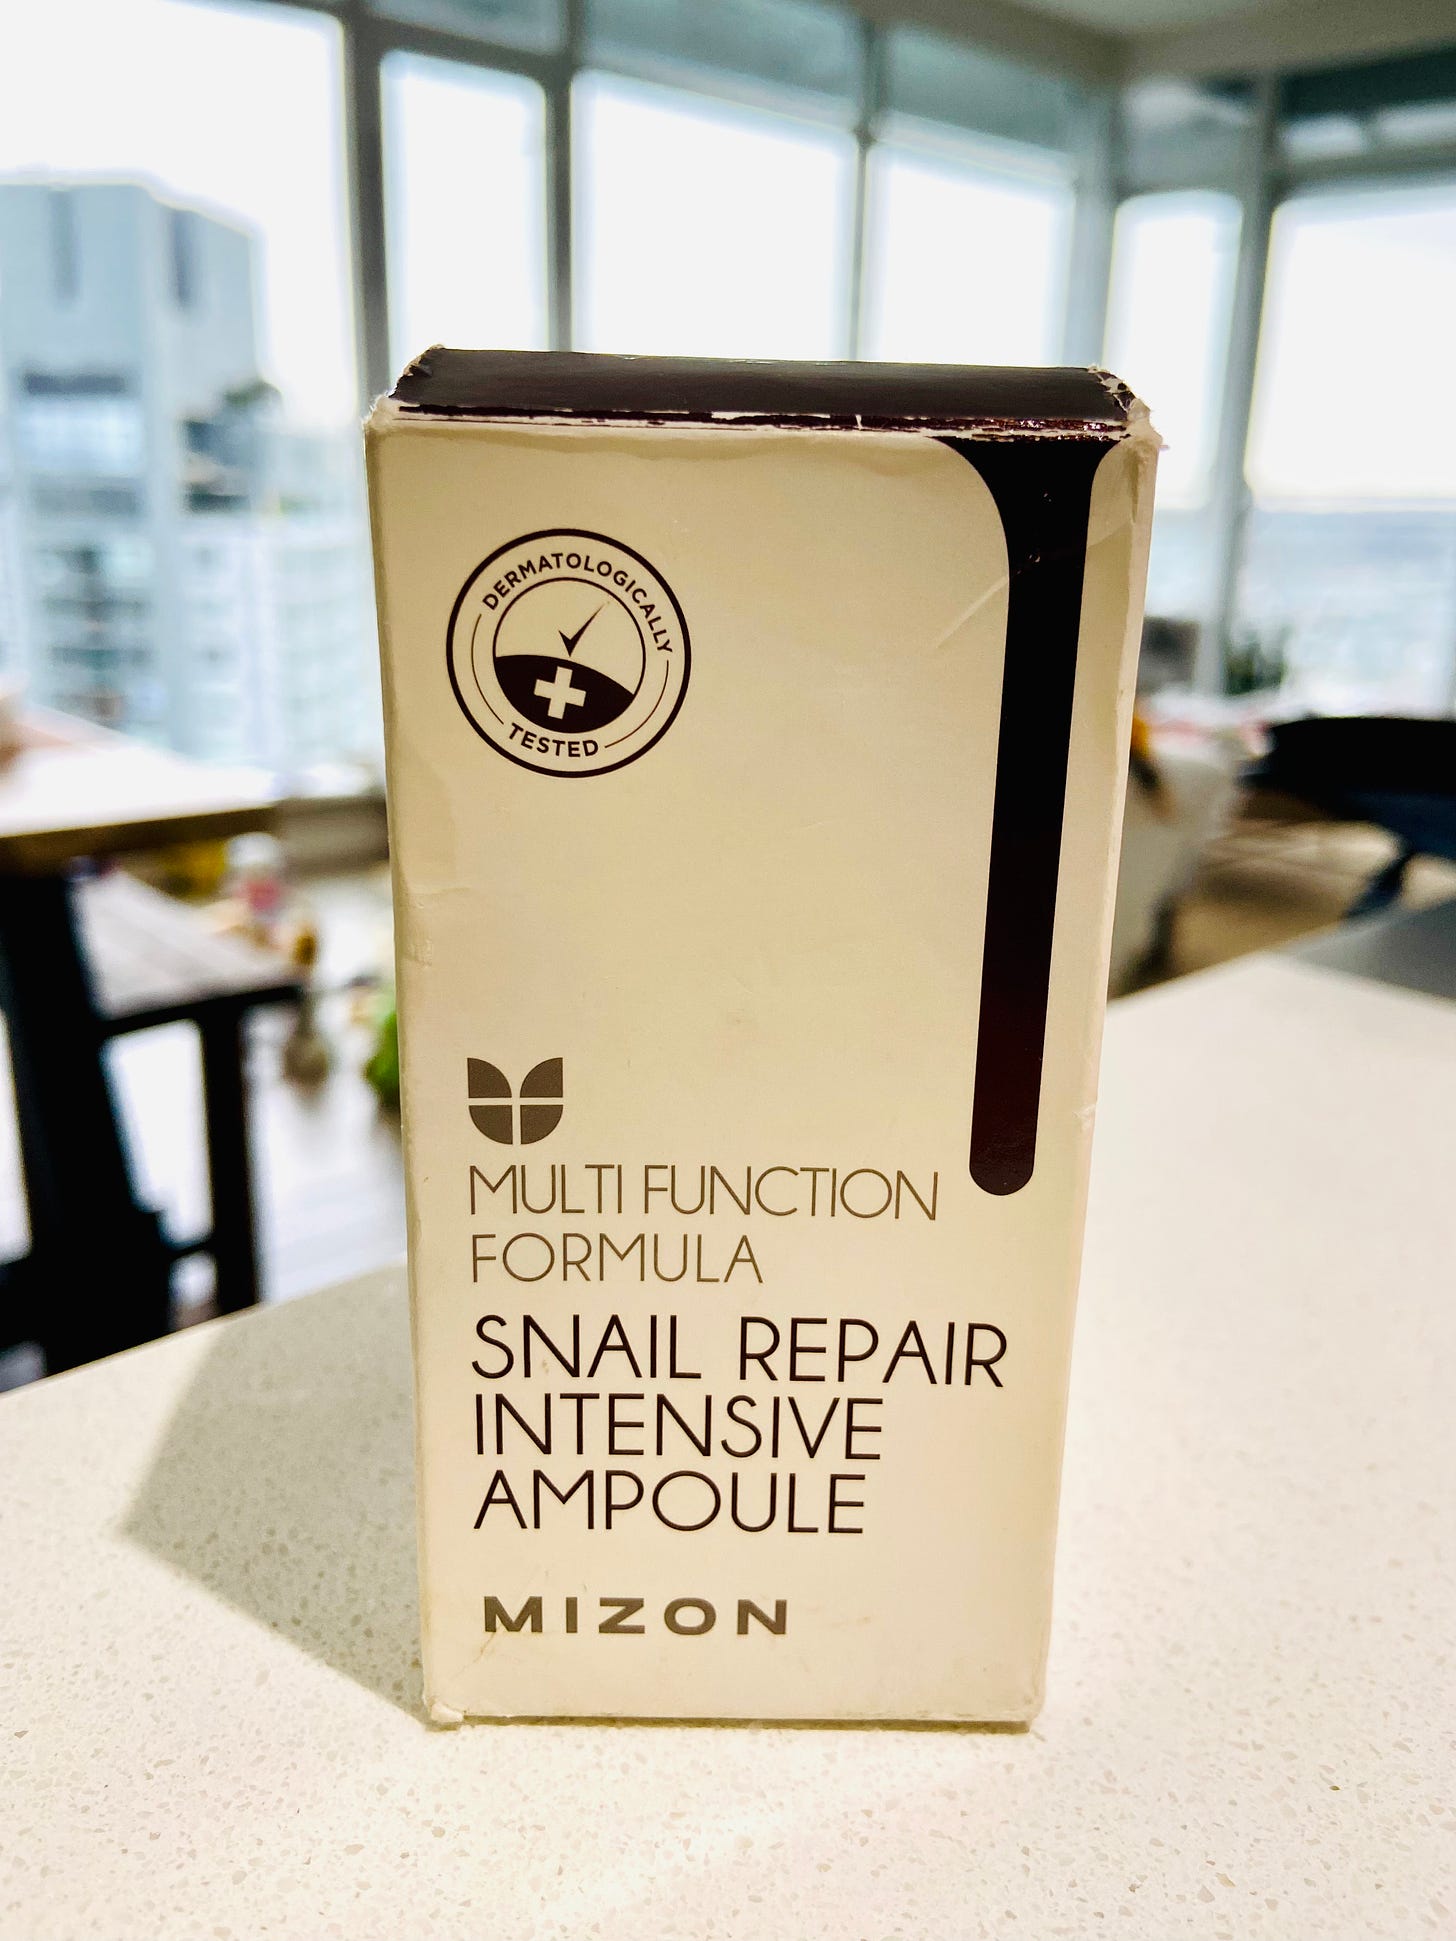 Cardboard box holding Mizon serum bottle.